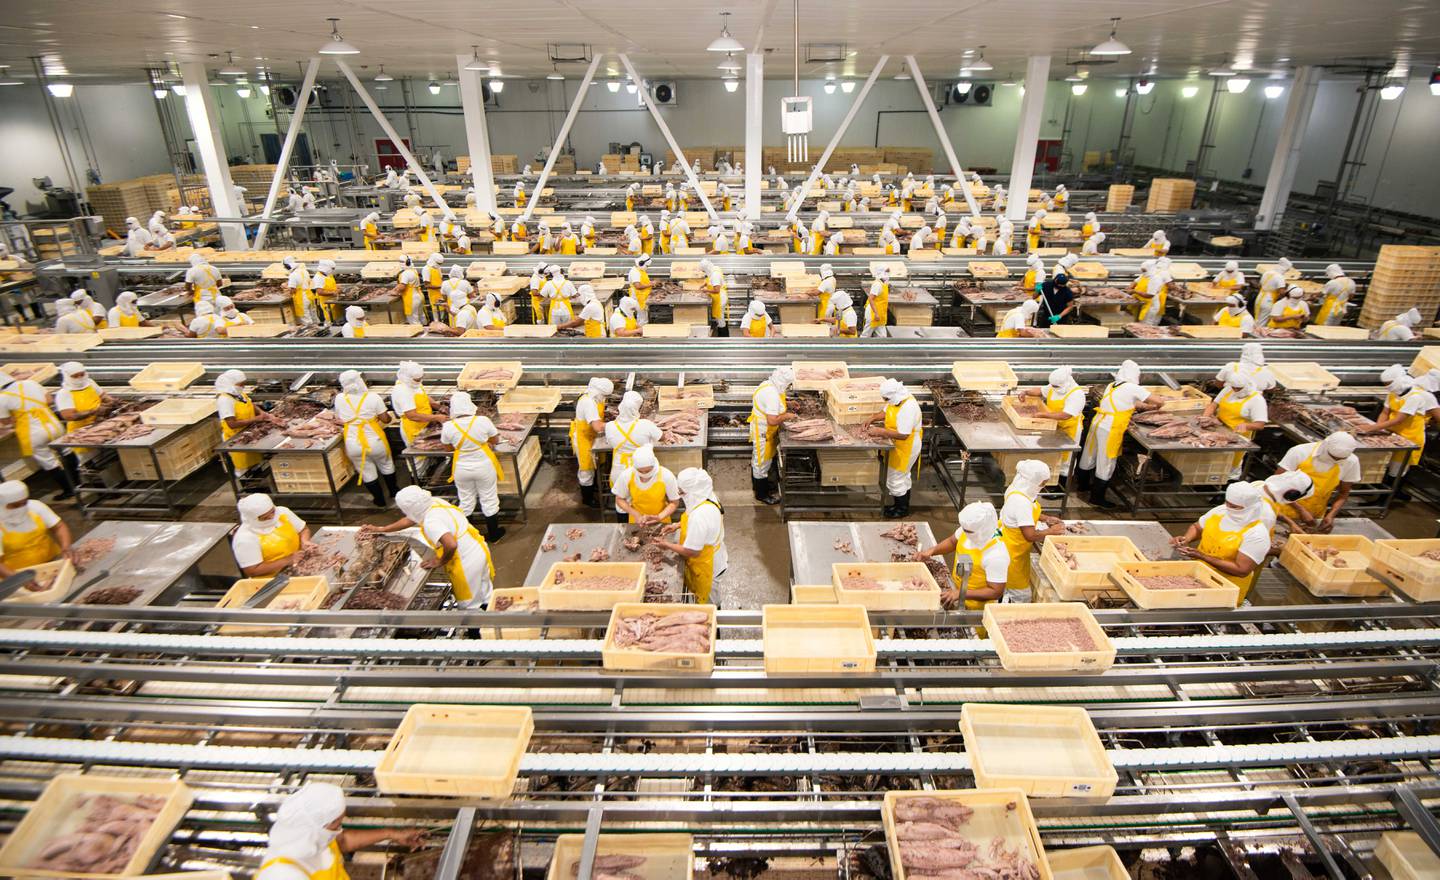 Un aumento del 25% en la demanda de atún, tanto en mercado interno como para exportación, exigió un aumento del personal en la planta de Alimentos Prosalud, en Puntarenas. Foto: Cortesía de la empresa